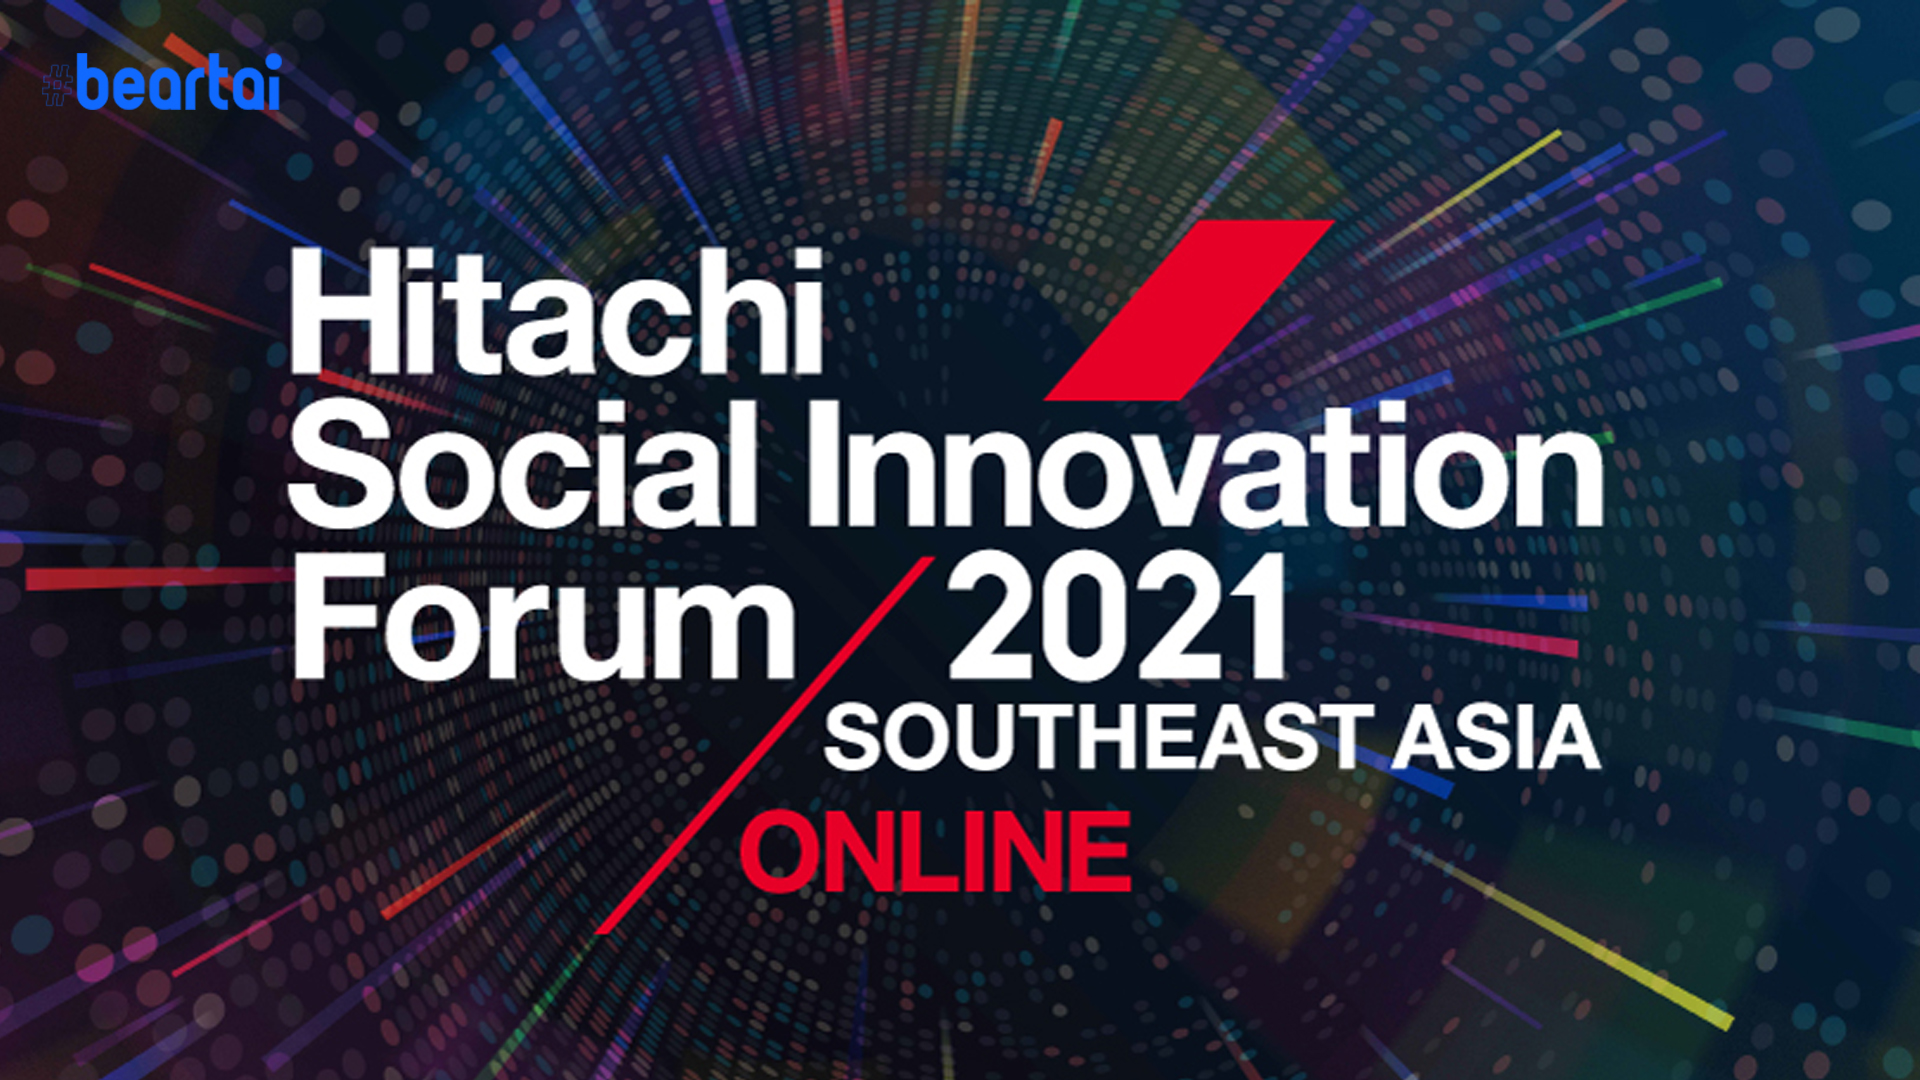 ชวนฟังสัมมนาฟรี Hitachi Social Innovation Forum 2021 เมื่อ Digital Tranformation มาเร็วต้องกระโดดตามให้ทัน!